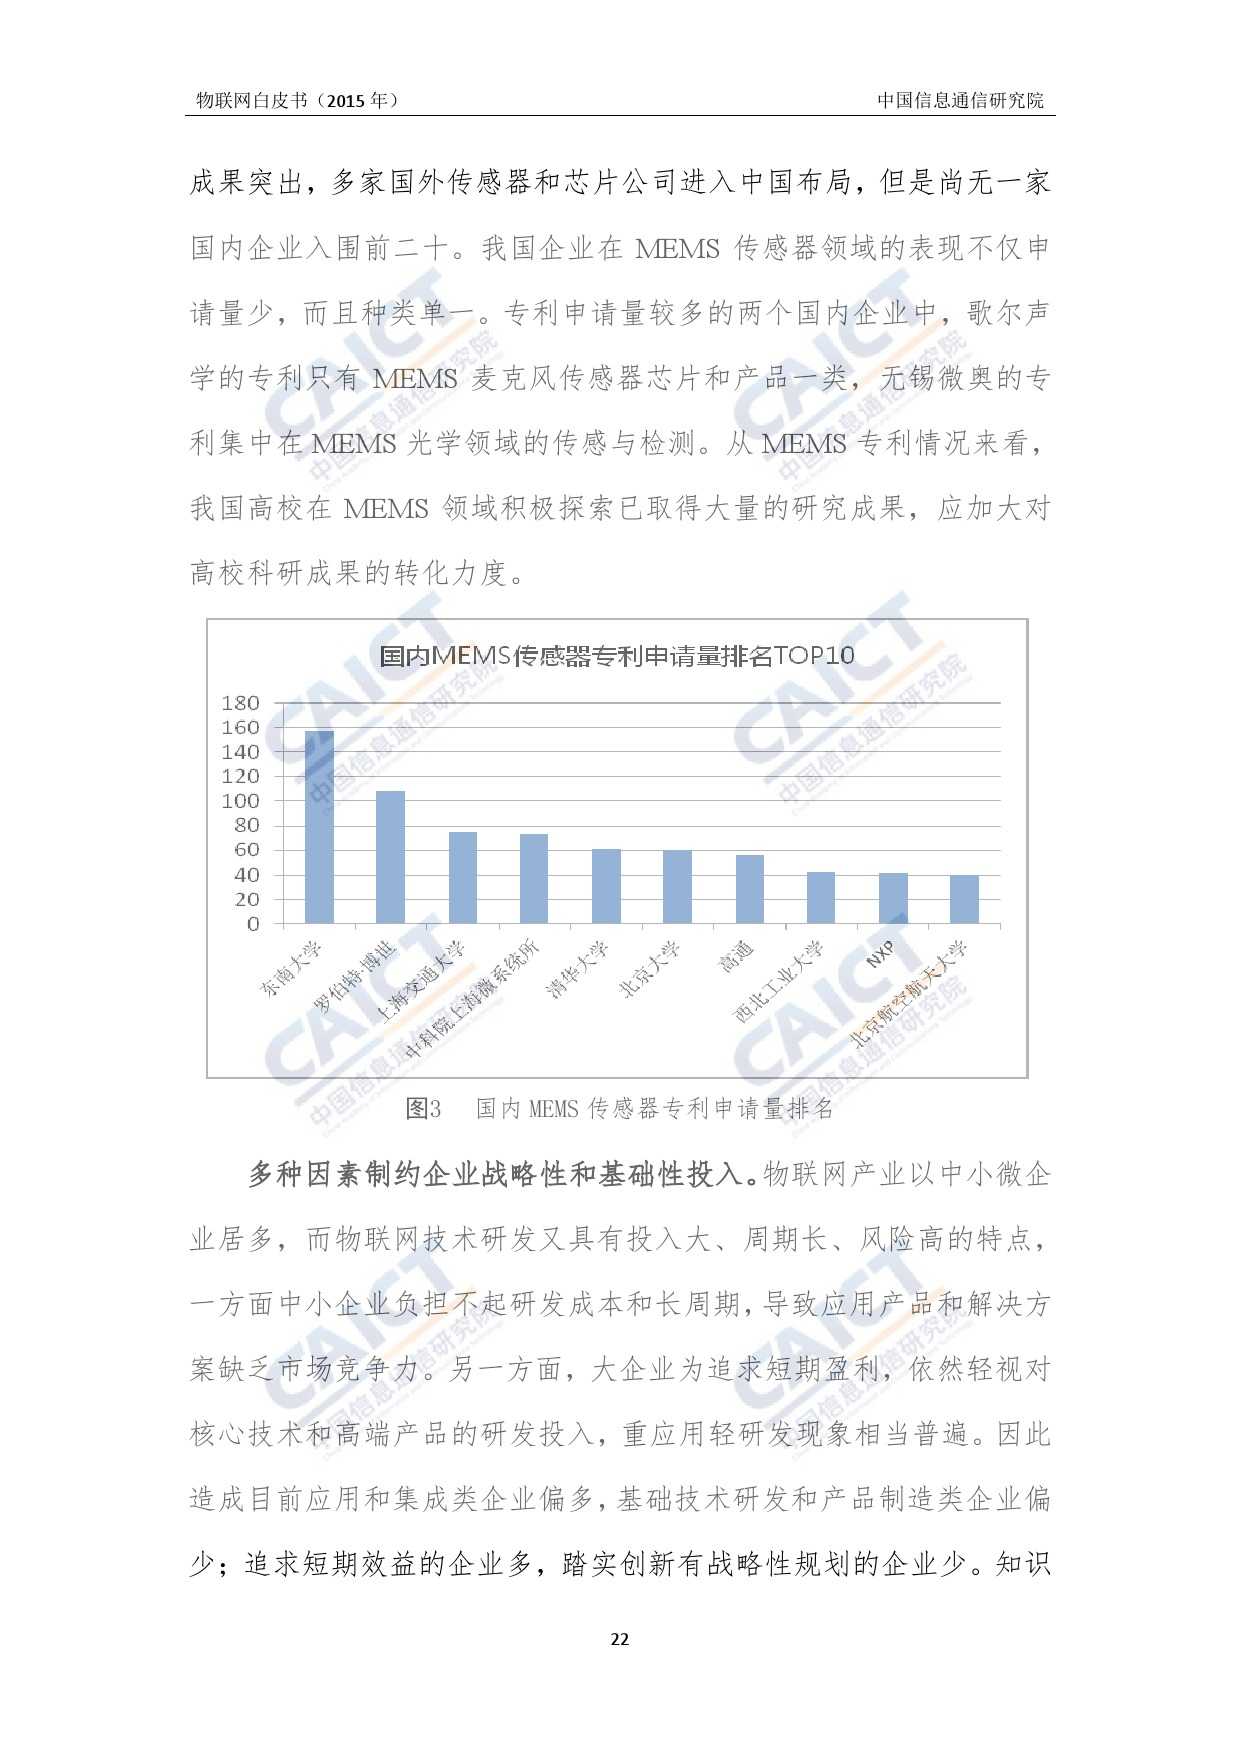 中国信息通信研究院：2015年物联网白皮书_000026